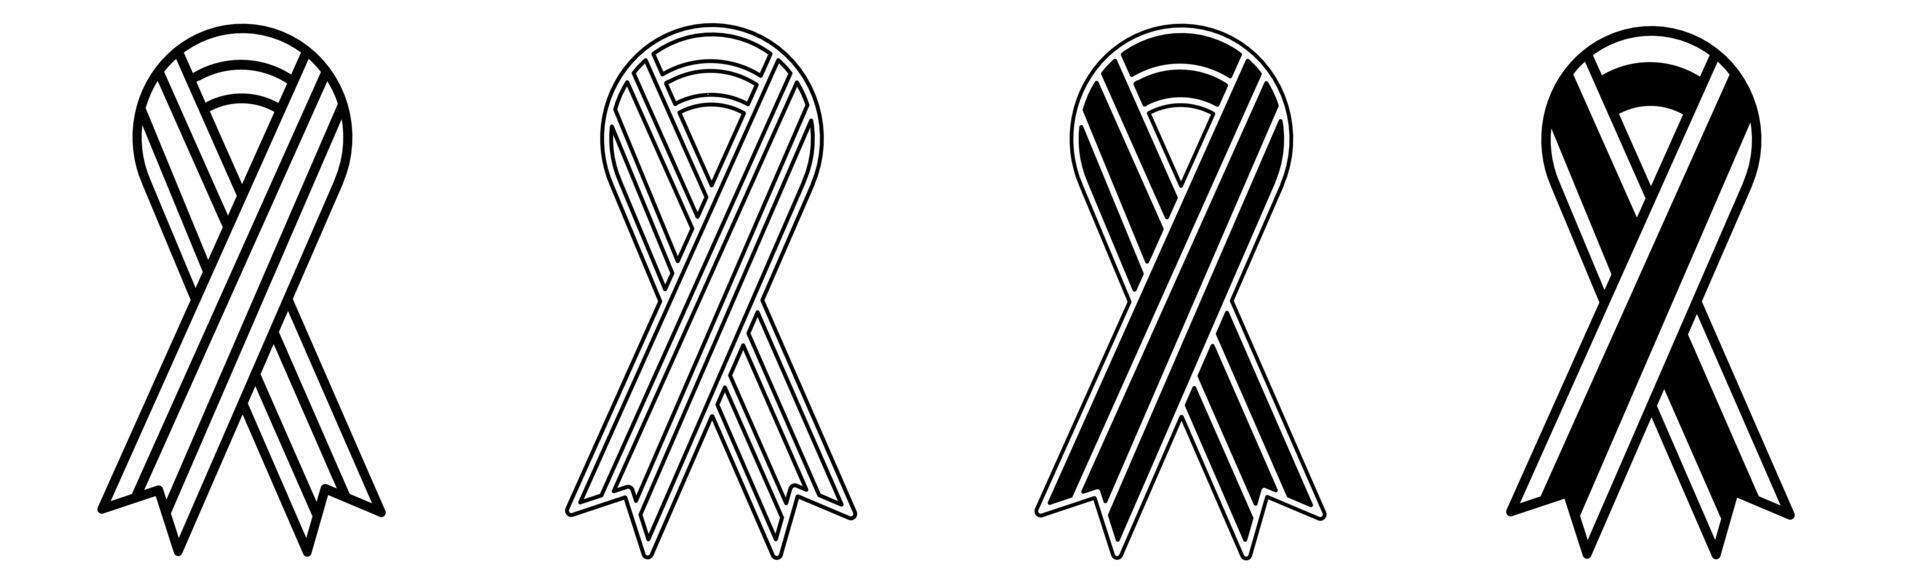 noir et blanc illustration de une ruban. ruban icône collection avec doubler. Stock vecteur illustration.